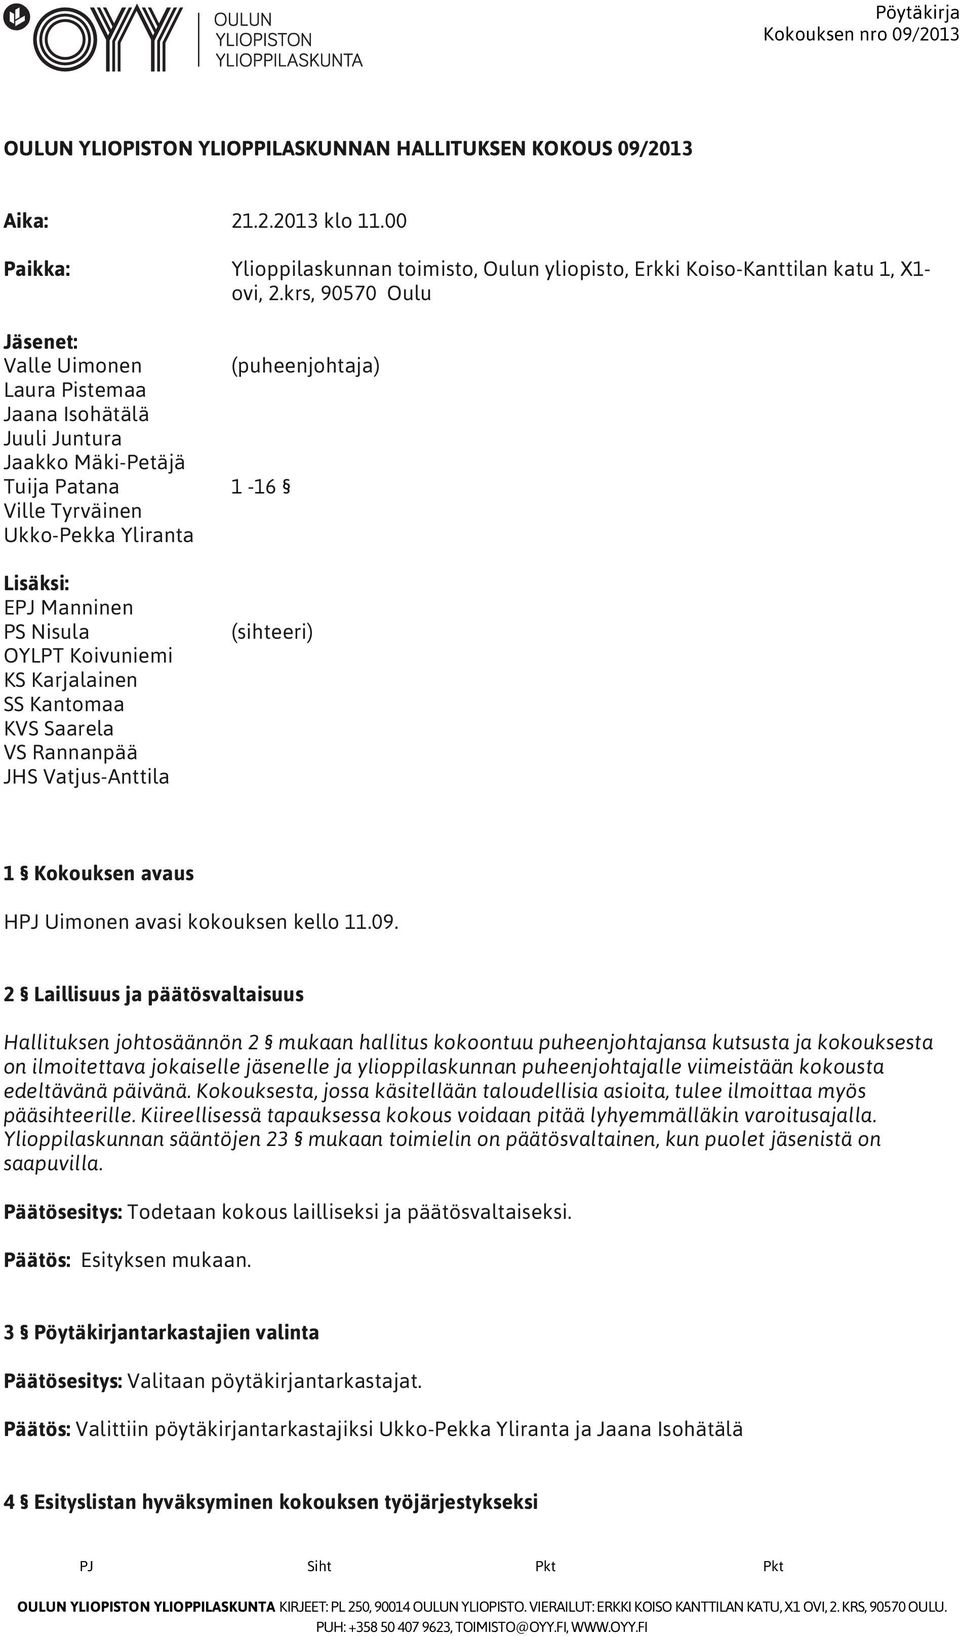 Nisula OYLPT Koivuniemi KS Karjalainen SS Kantomaa KVS Saarela VS Rannanpää JHS Vatjus-Anttila (sihteeri) 1 Kokouksen avaus HPJ Uimonen avasi kokouksen kello 11.09.